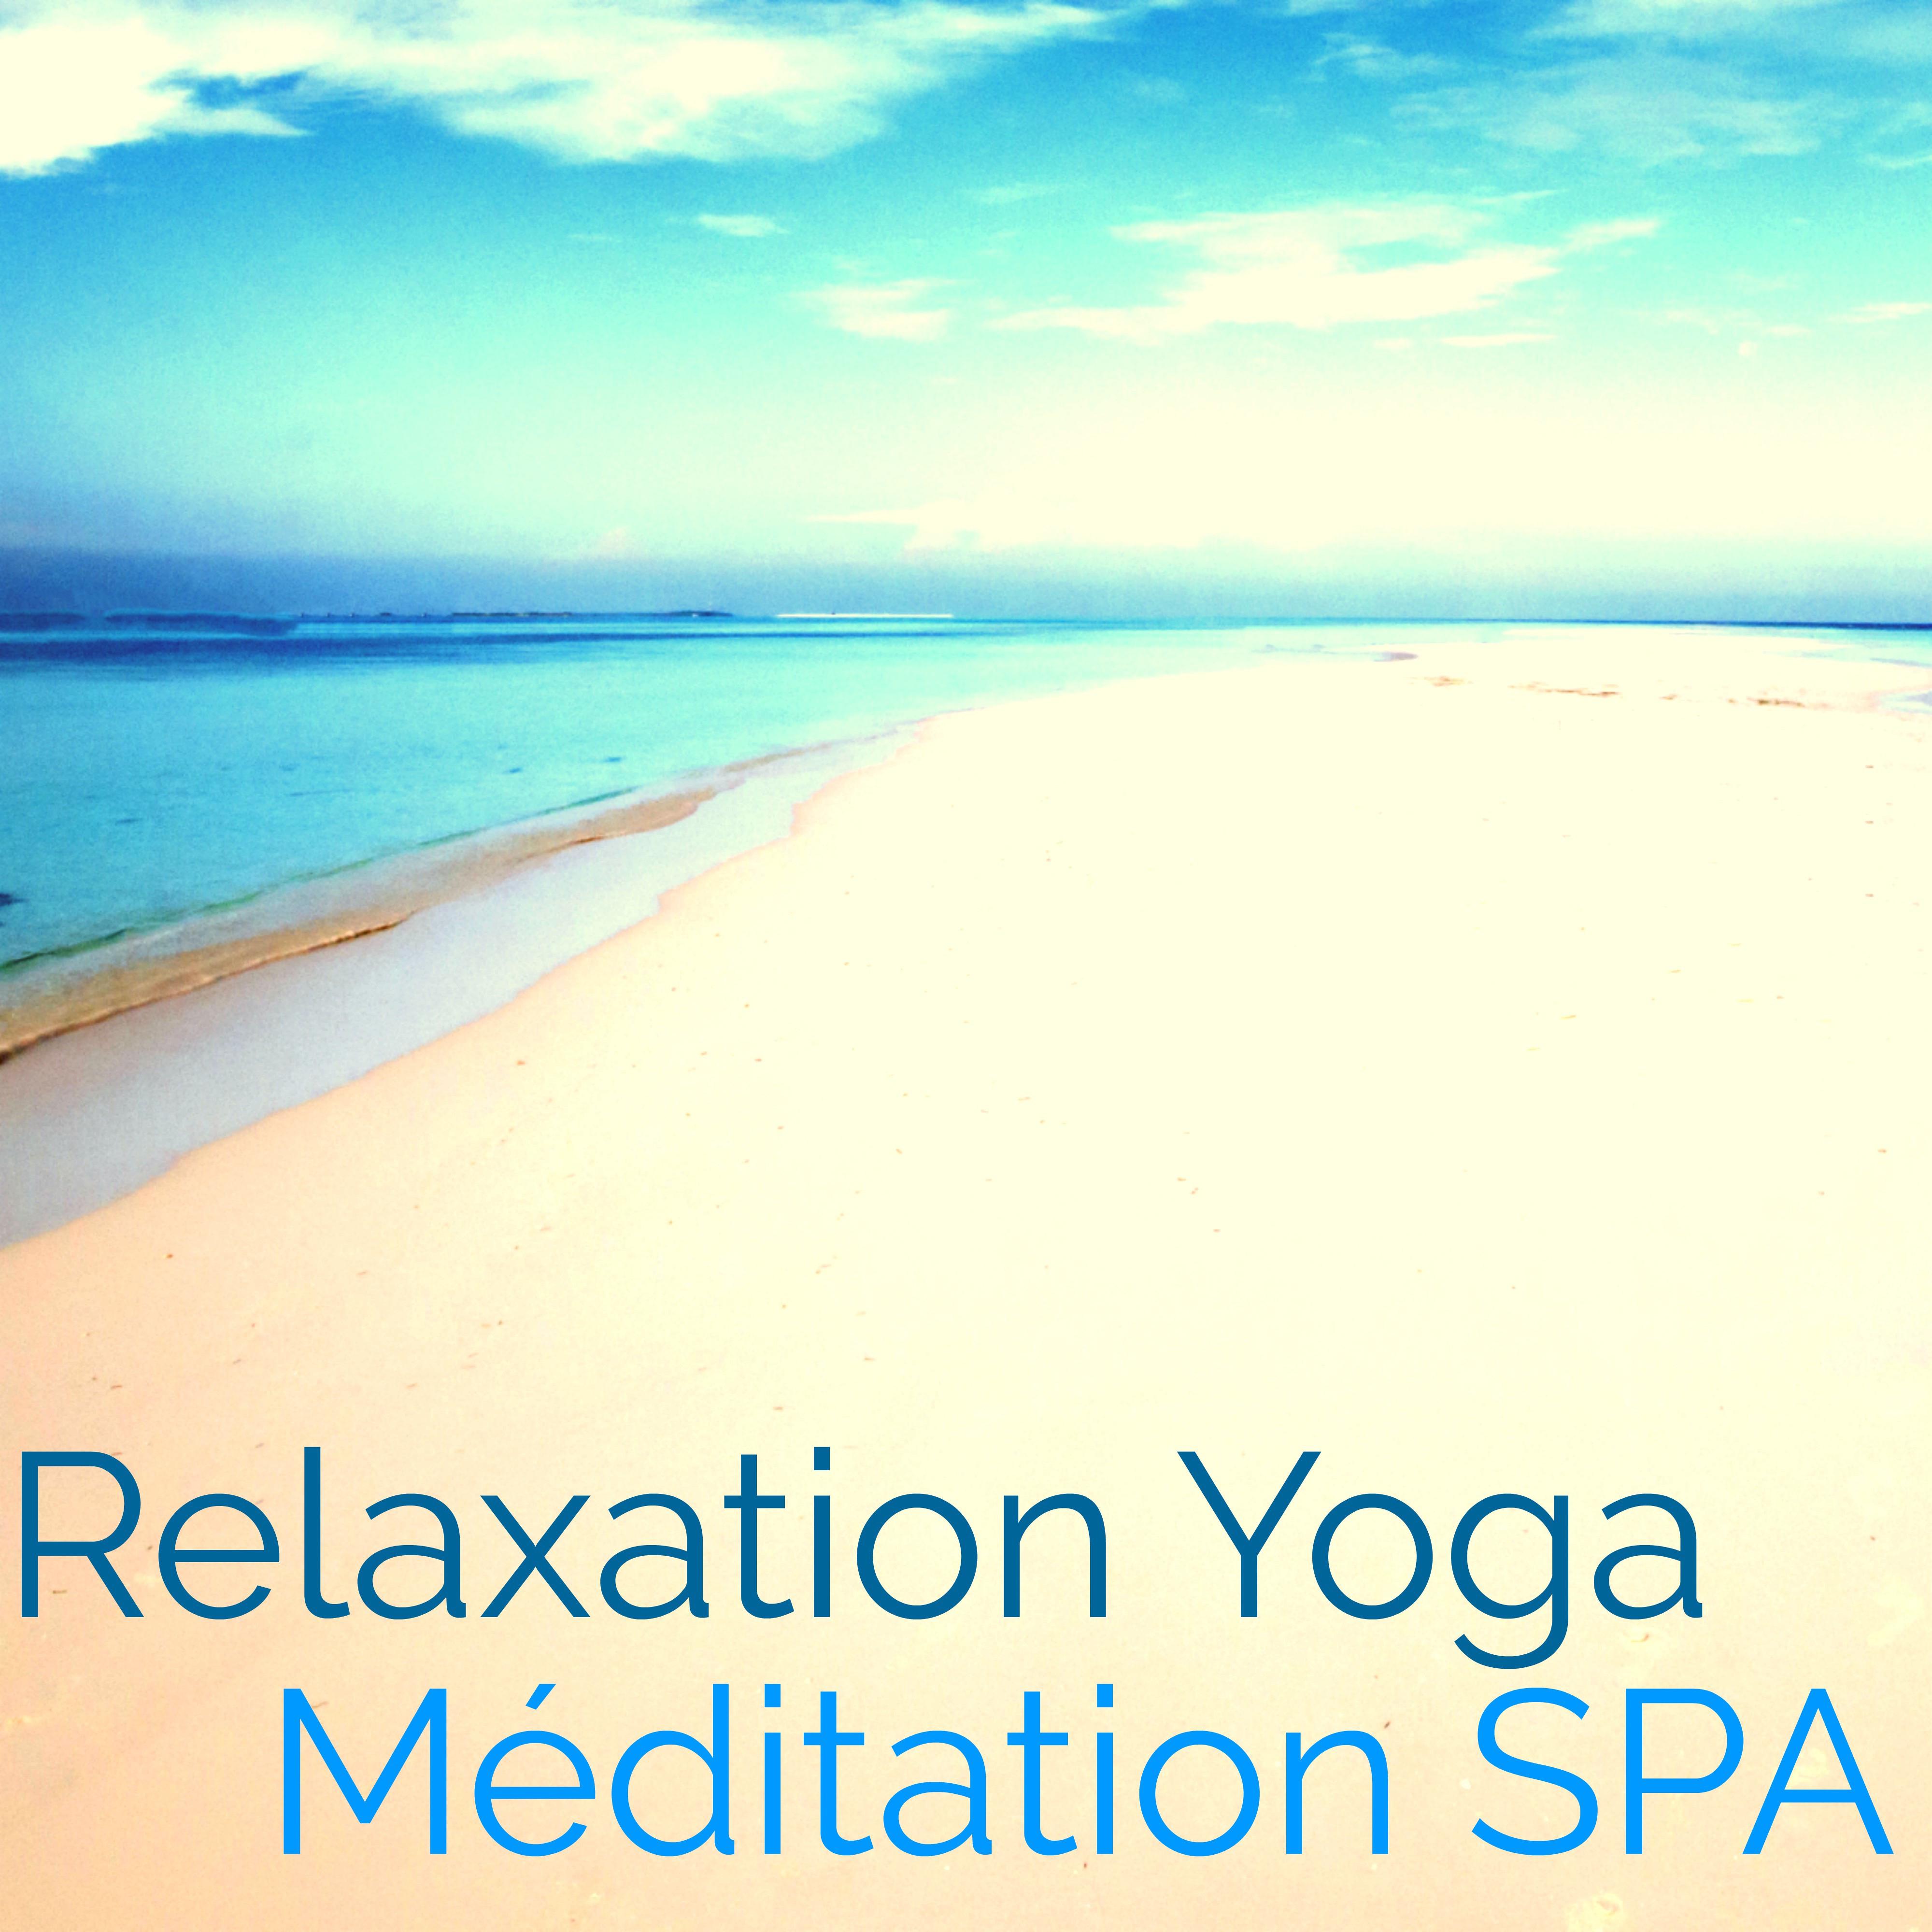 Relaxation Yoga Me ditation Spa: Musique d' Ambiance Relaxante pour Relaxation, Spa, Me ditation, Yoga et Massage, Coffret Bien tre pour votre Sante